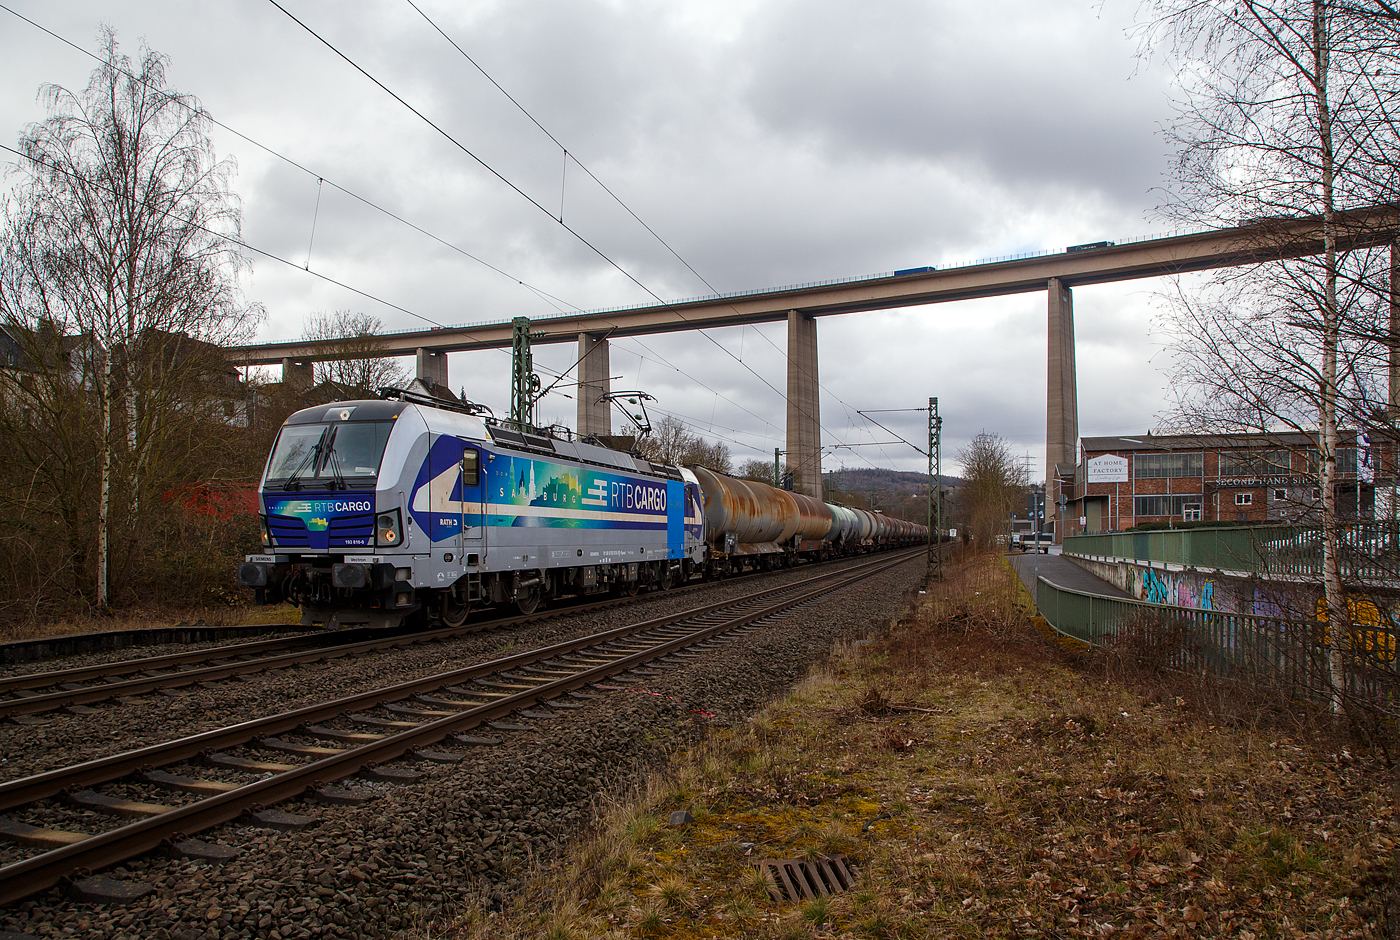 Die an die RTB Cargo GmbH vermietete SIEMEN Vectron AC – 193 810-9 „Salzburg“ (91 80 6193 810-9 D-Rpool) der Railpool GmbH (München), fährt am 22.03.2021 mit einem Kesselwagenzug durch Siegen-Eiserfeld in Richtung Siegen. Im Hintergrund die 105 m hohe Siegtalbrücke der A45 (Sauerlandlinie).

Die Siemens Vectron AC wurde 2014 von Siemens Mobility GmbH in München-Allach unter der Fabriknummer 21898 gebaut und an die Railpool GmbH in München geliefert. Diese Vectron Lokomotive ist als AC – Lokomotive (Wechselstrom-Variante) mit 6.400 kW konzipiert und zugelassen für Deutschland, Österreich, Ungarn und Rumänien, sie hat eine Höchstgeschwindigkeit von 200 km/h.
